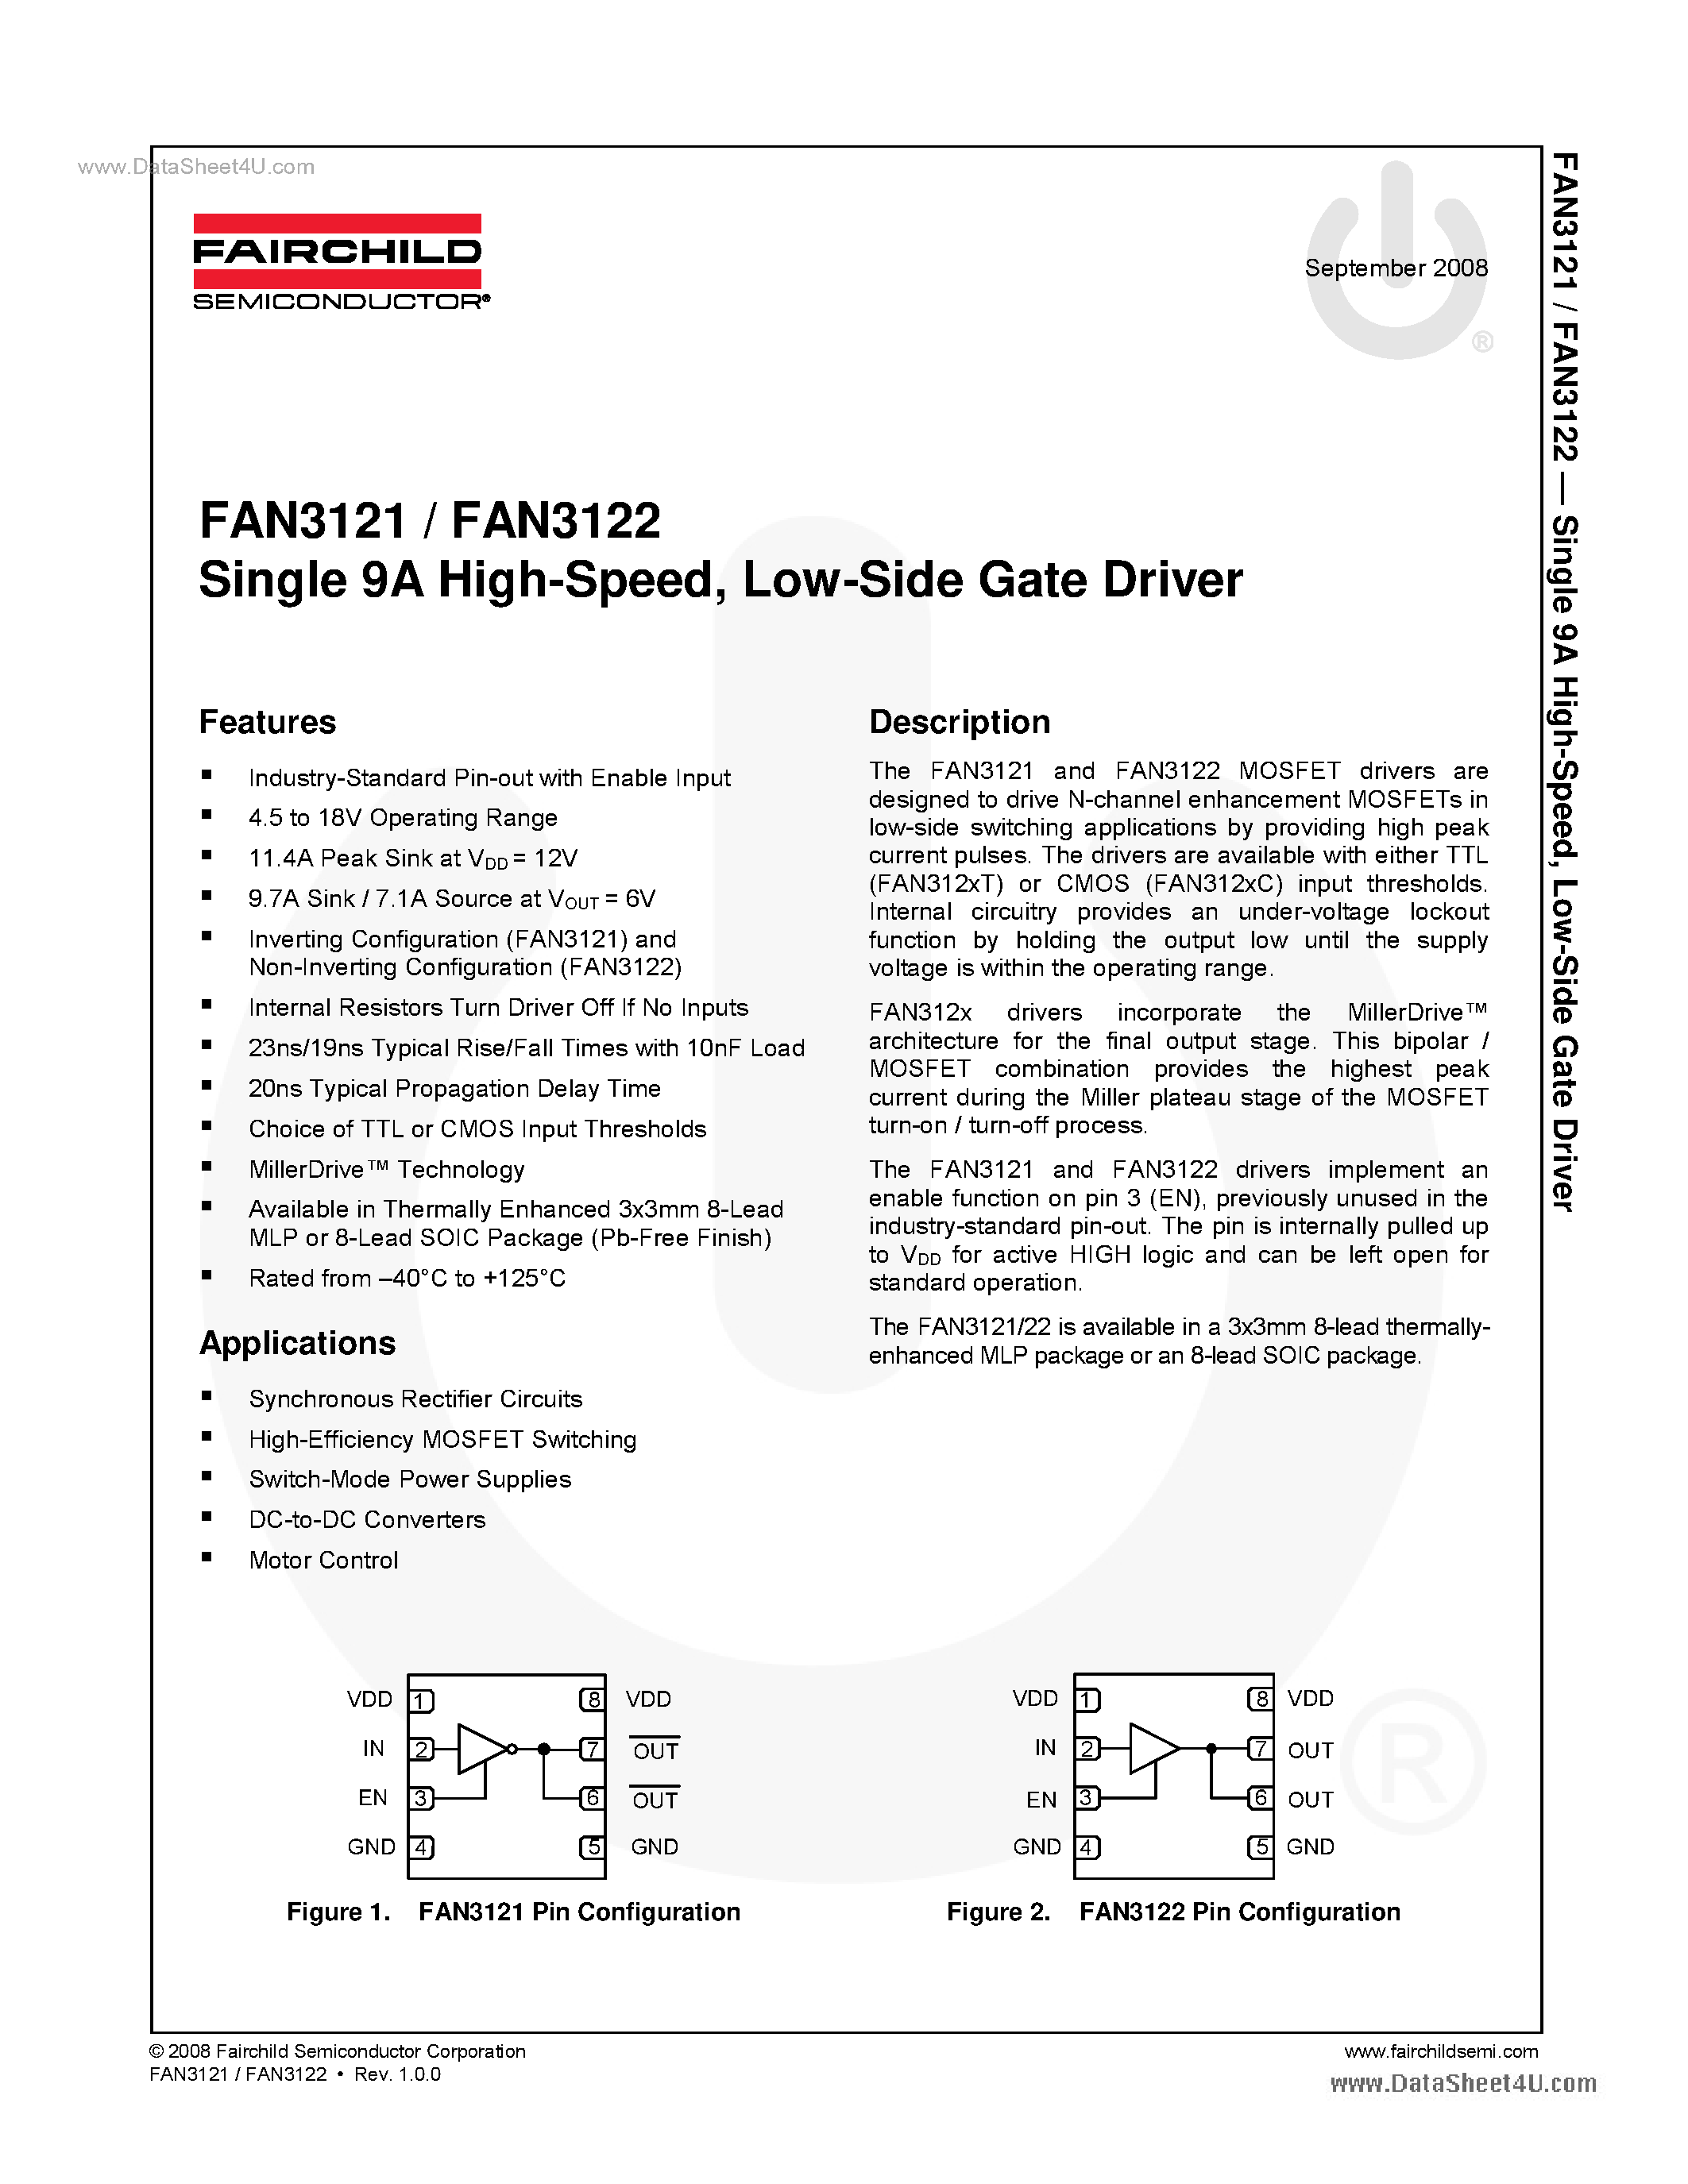 Datasheet FAN3121 - (FAN3121 / FAN3122) Low-Side Gate Driver page 1